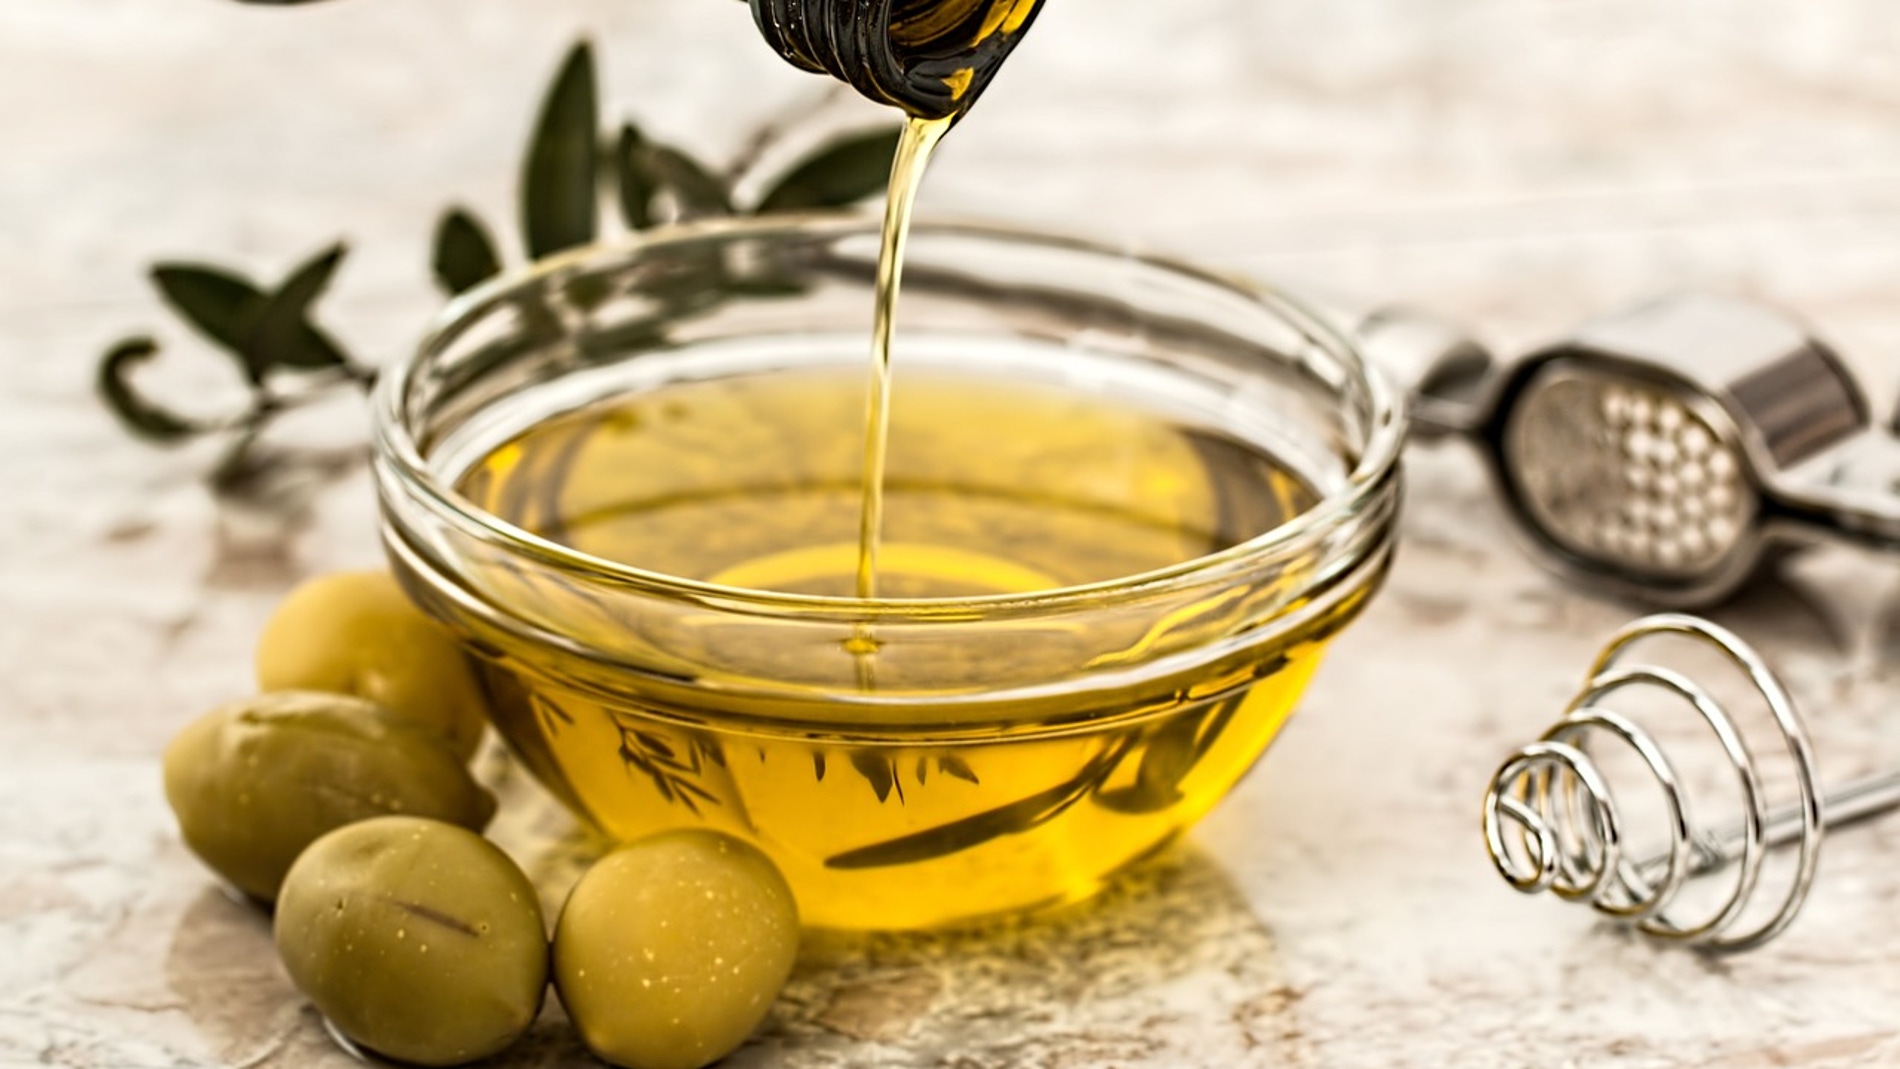 El aceite de oliva ofrece dos poderosas armas contra la resistencia bacteriana